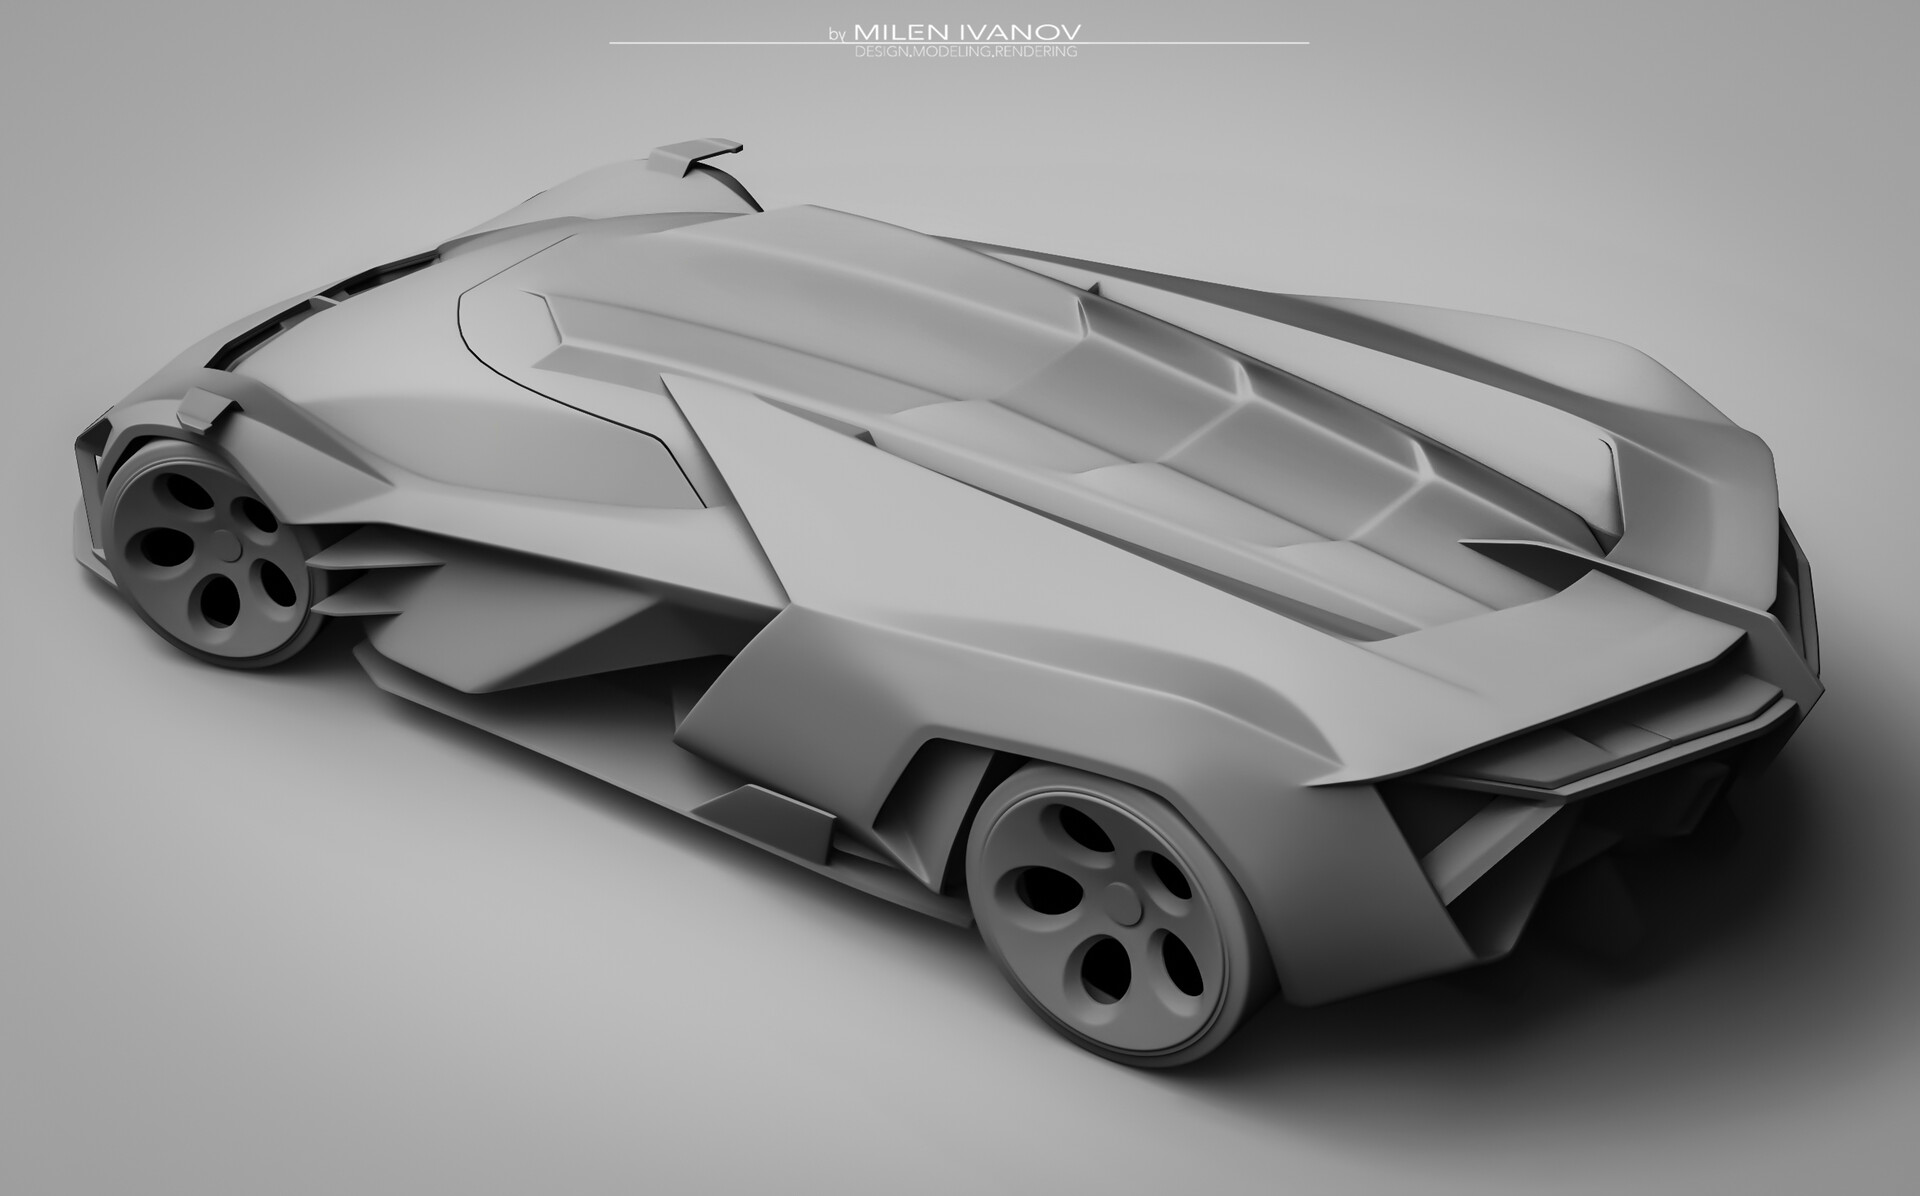 Milen Ivanov - Lamborghini Concepto X